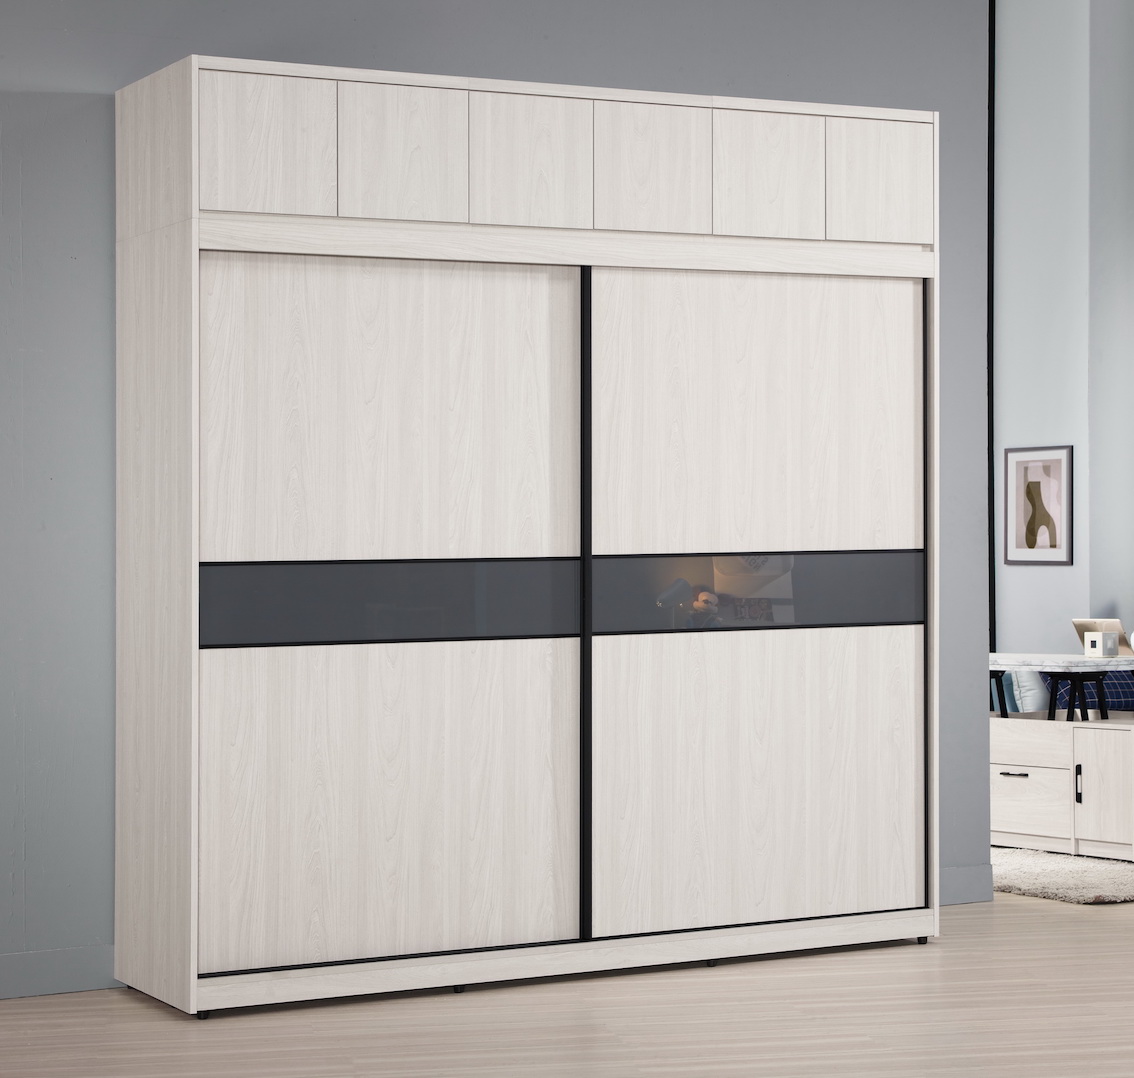 蘿克斯6尺拉門衣櫃 被櫃設計 自選內裝組合